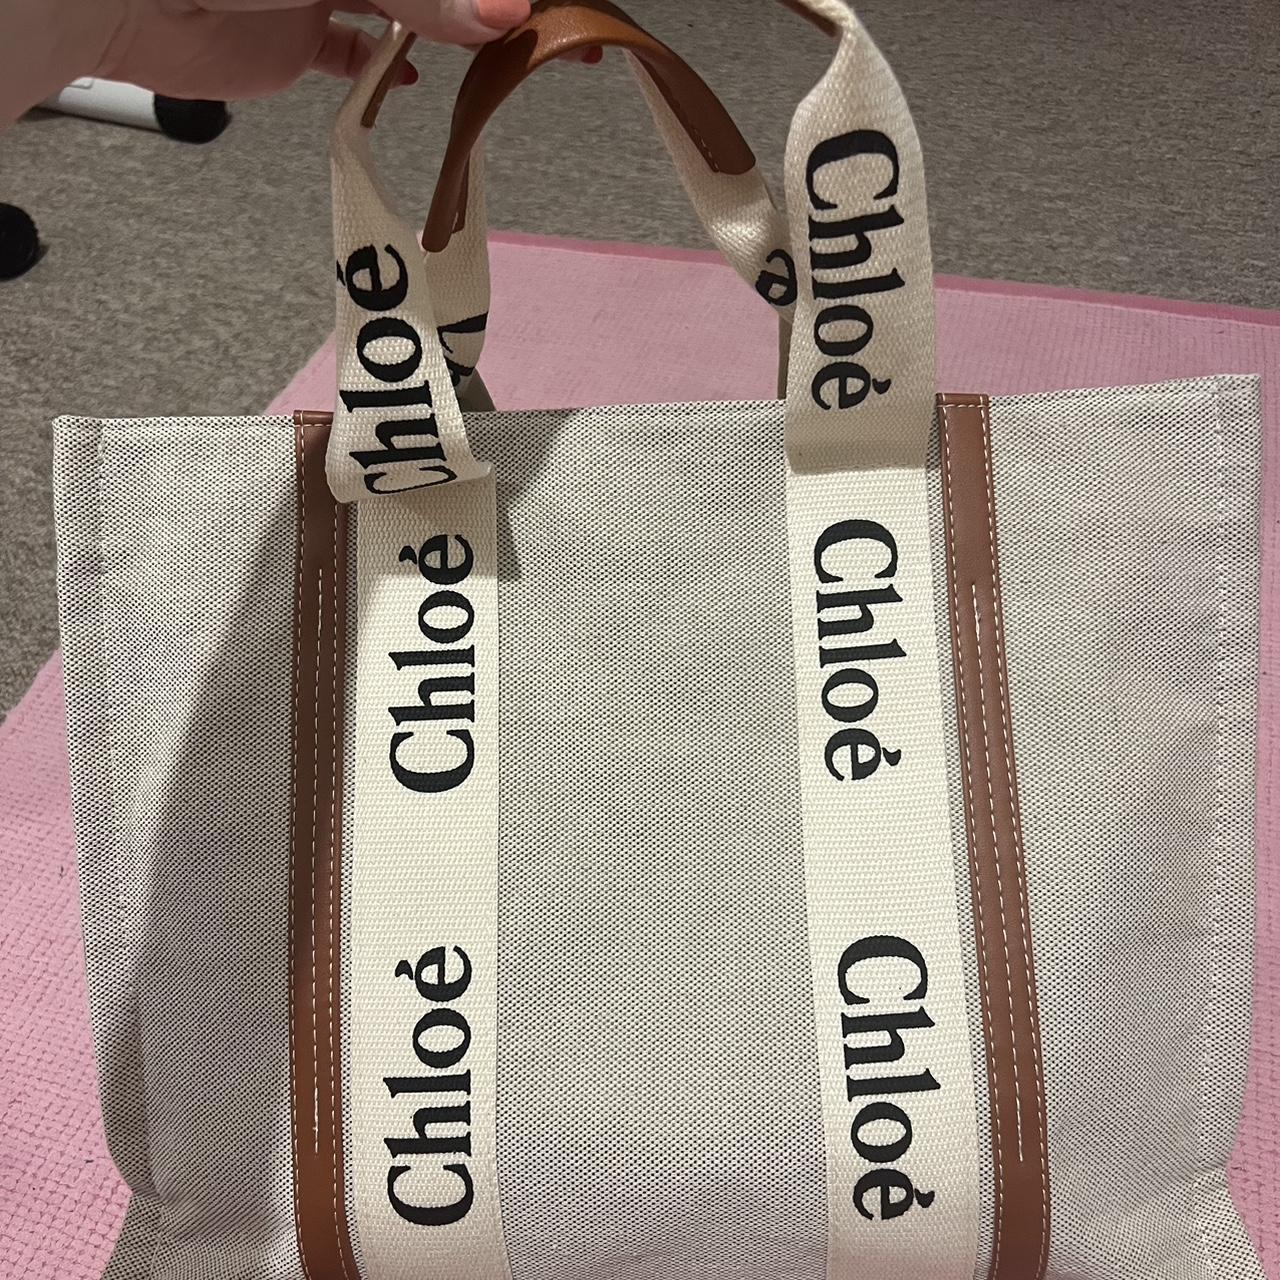 Chloe inspired large tote bag. #totebag #bag #chooe - Depop